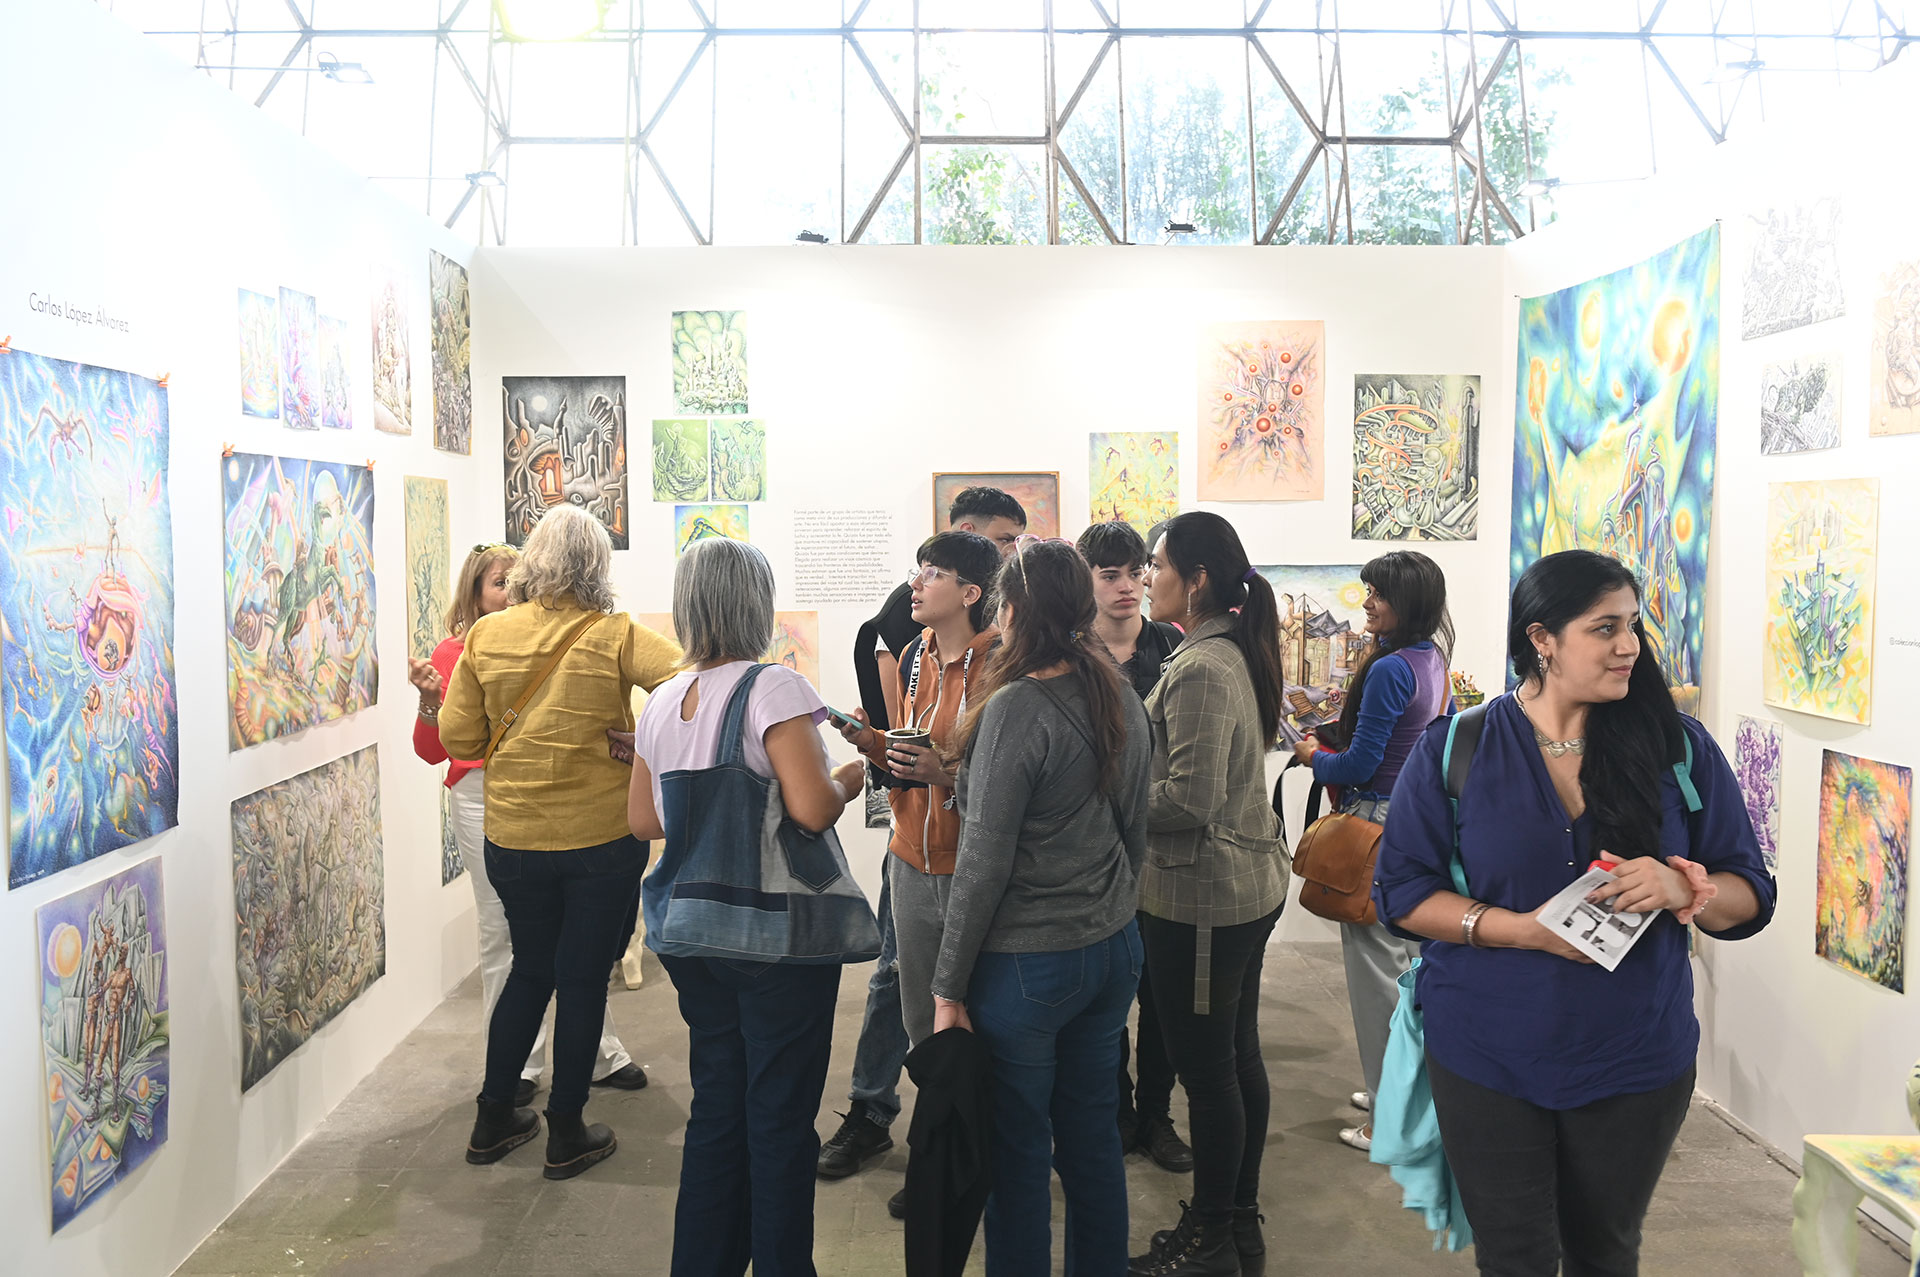 Se presentaron 60 espacios, entre galerías y proyectos en las "cúpulas" celeste y violeta del complejo 